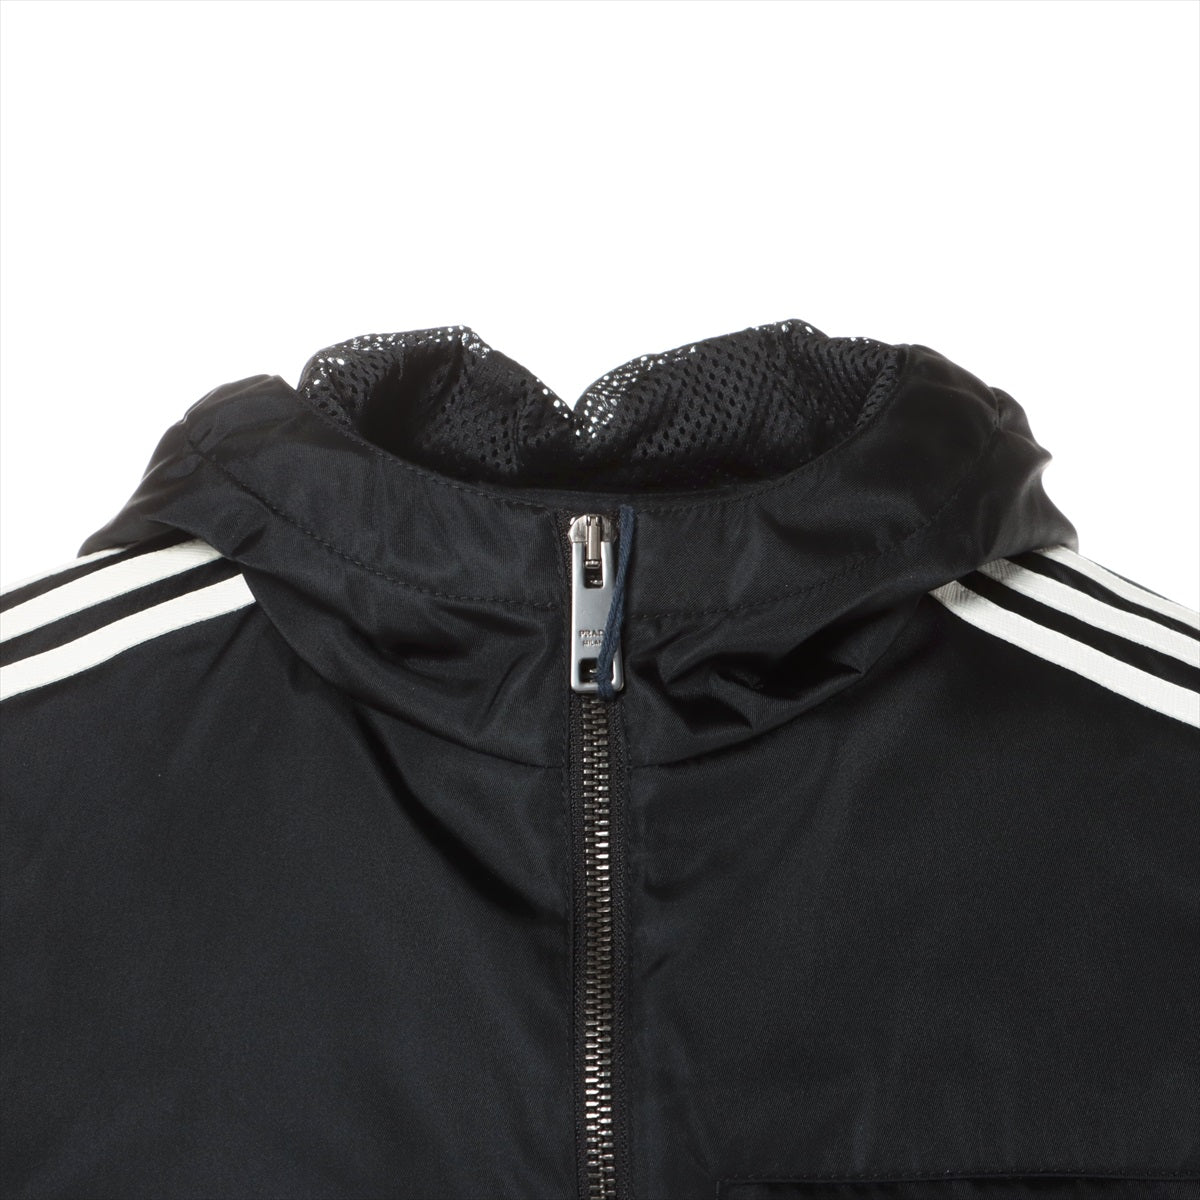 Prada x Adidas Re Nylon Re Nylon 21AW Nylon track jacket 44 Men's Black  SGB964 Triangle logo